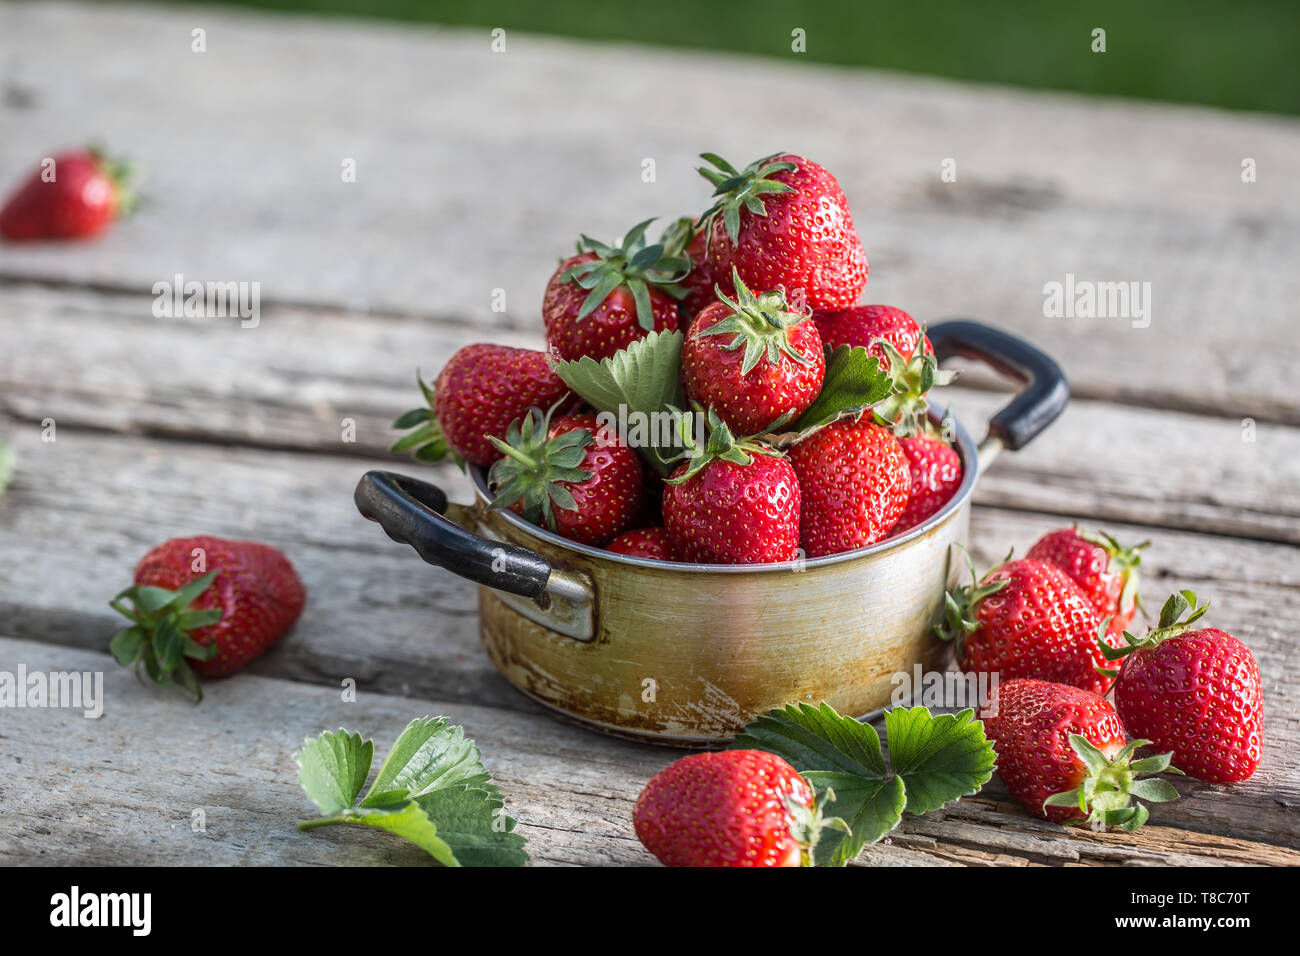 Bowl con fresas frescas maduras en la mesa de la cocina Stock Photo